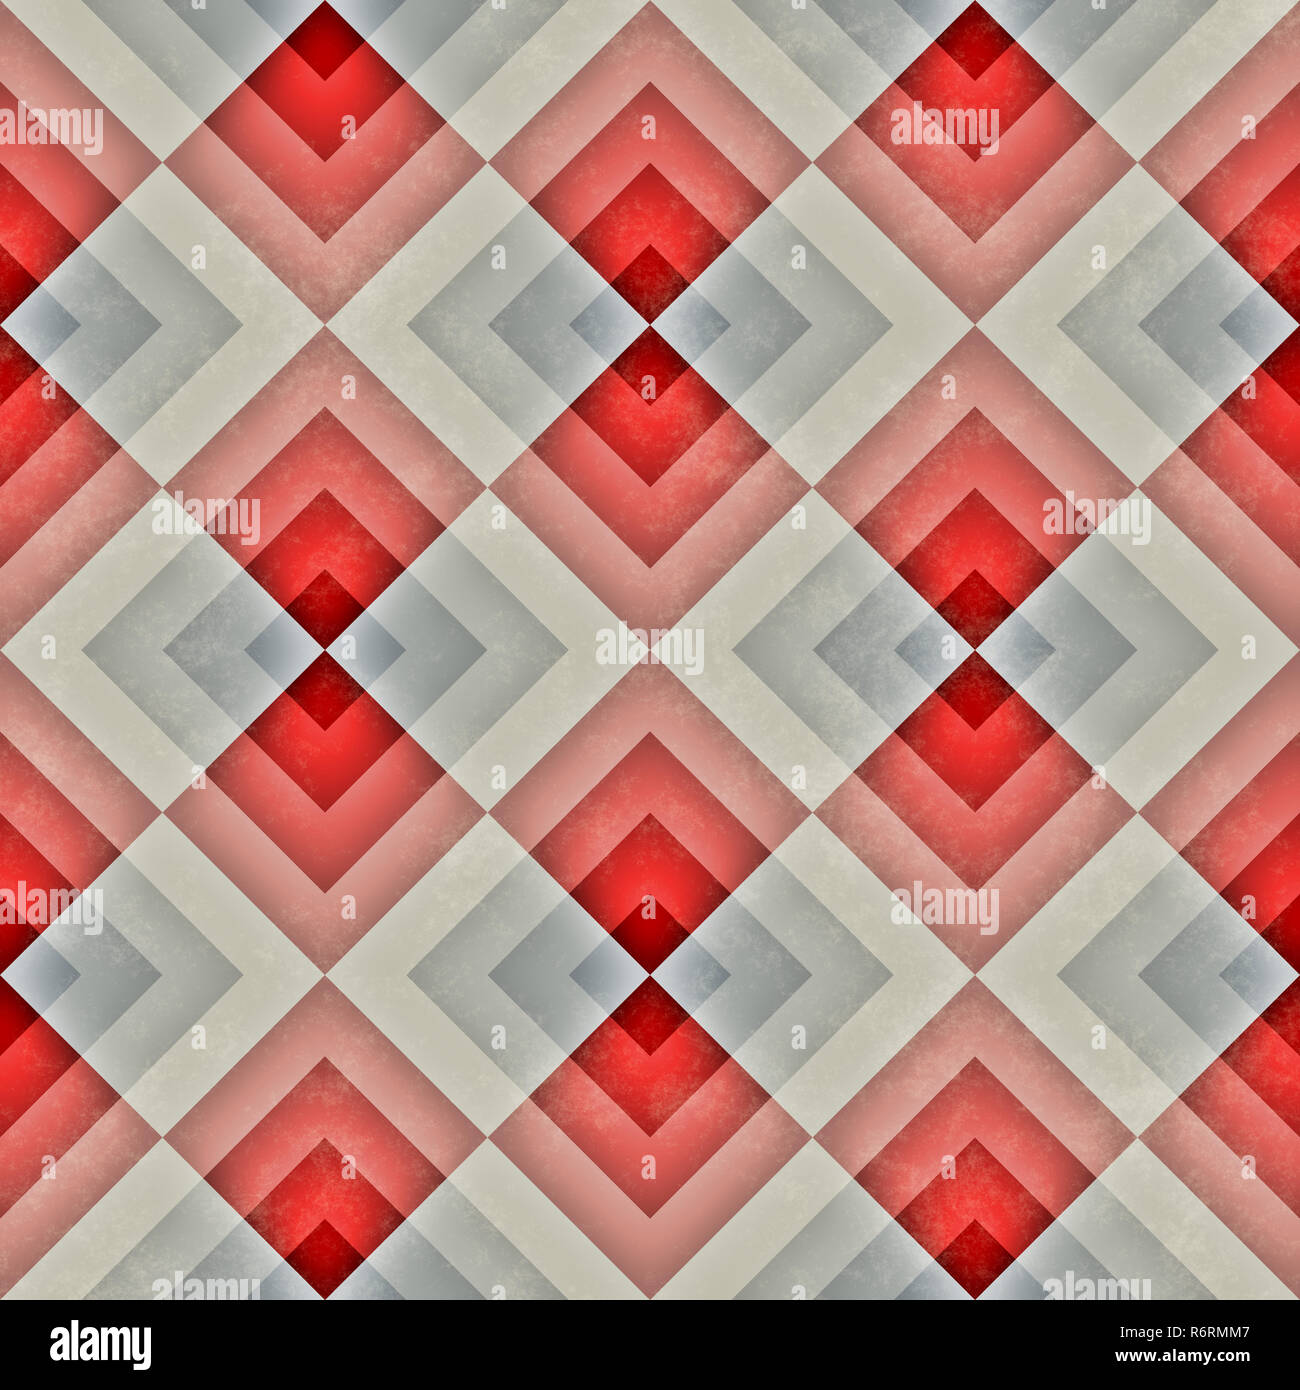 Raster Seamless Diagonal Red Blue Tan Stripe Rhombus Blocks Grid  Grunge Retro Pattern Stock Photo